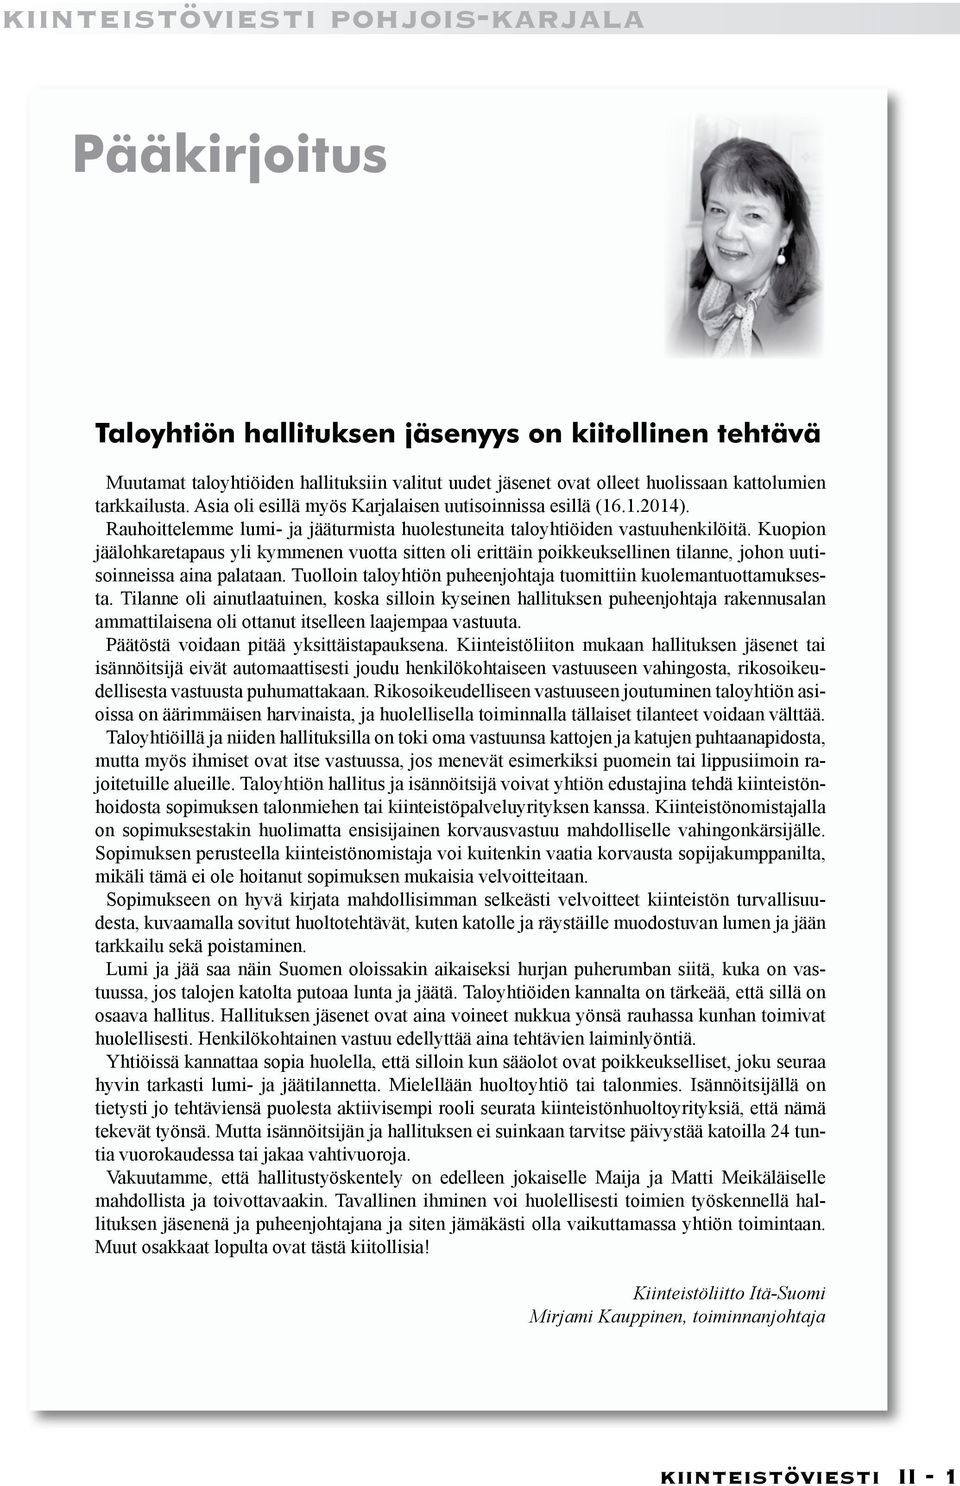 Kuopion jäälohkaretapaus yli kymmenen vuotta sitten oli erittäin poikkeuksellinen tilanne, johon uutisoinneissa aina palataan. Tuolloin taloyhtiön puheenjohtaja tuomittiin kuolemantuottamuksesta.